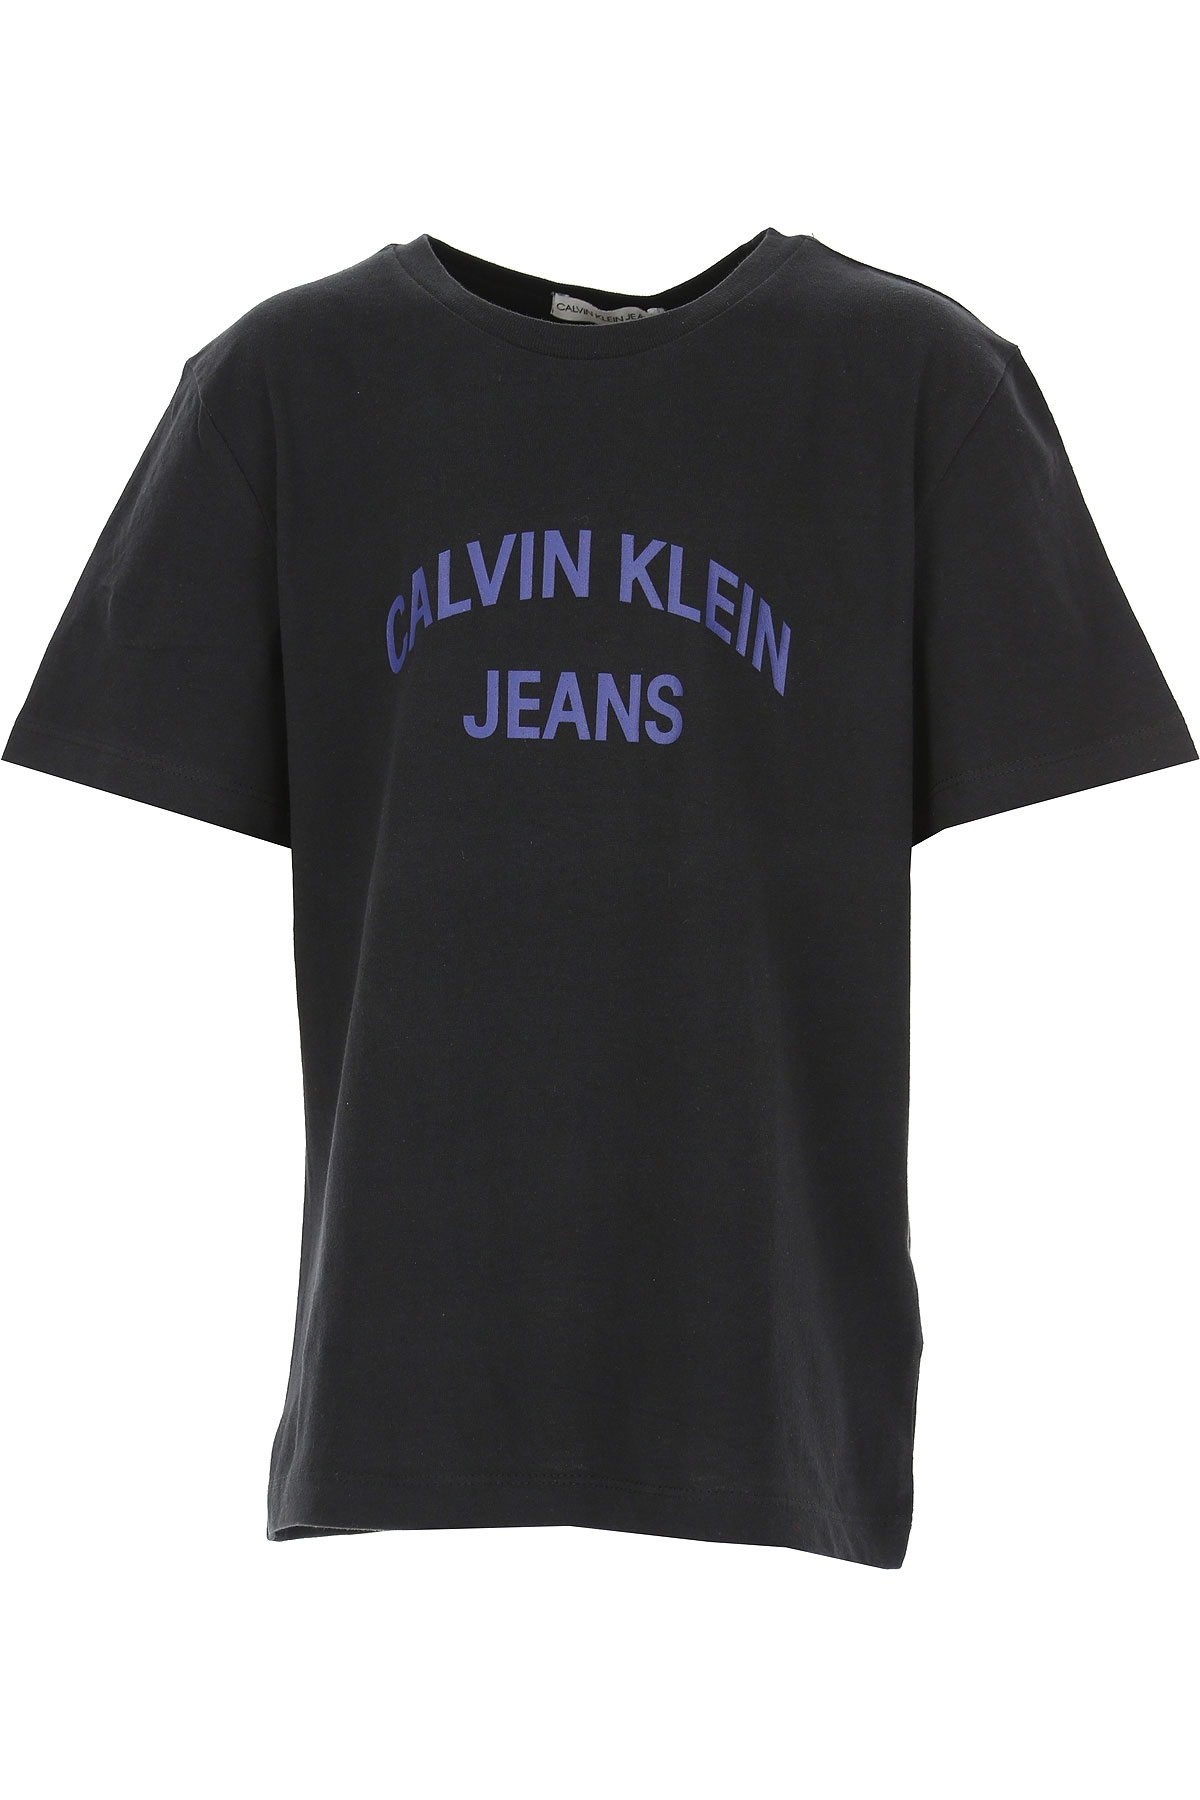 Calvin Klein Kinder T-Shirt für Jungen Günstig im Sale, Schwarz, Baumwolle, 2017, 10Y 12Y 14Y 16Y 8Y